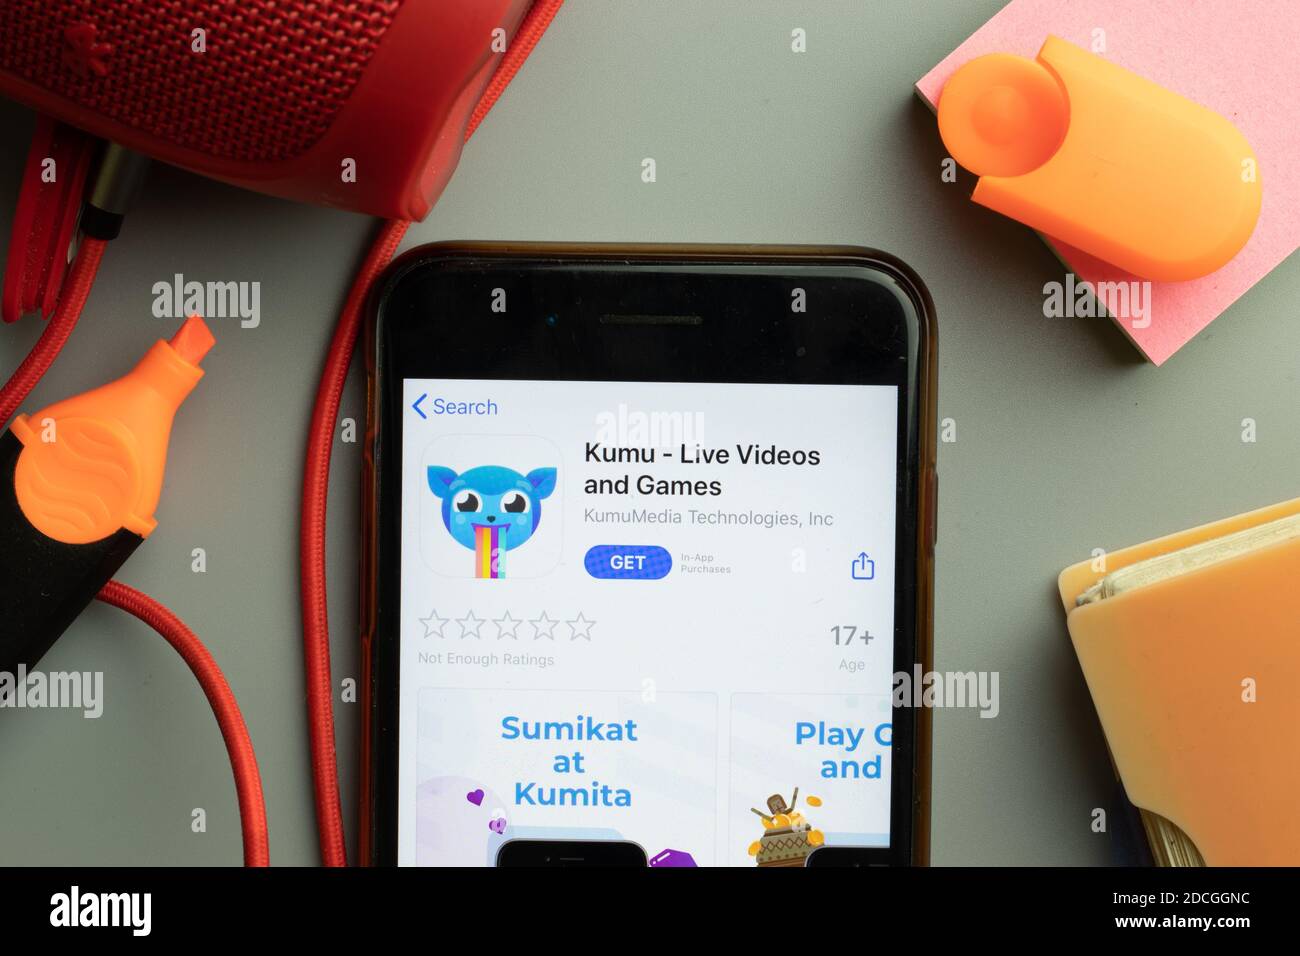 New York, Stati Uniti - 7 novembre 2020: Primo piano dello schermo del telefono con il logo dell'app mobile Kumu Live Videos in esposizione, editoriale illustrativo. Foto Stock